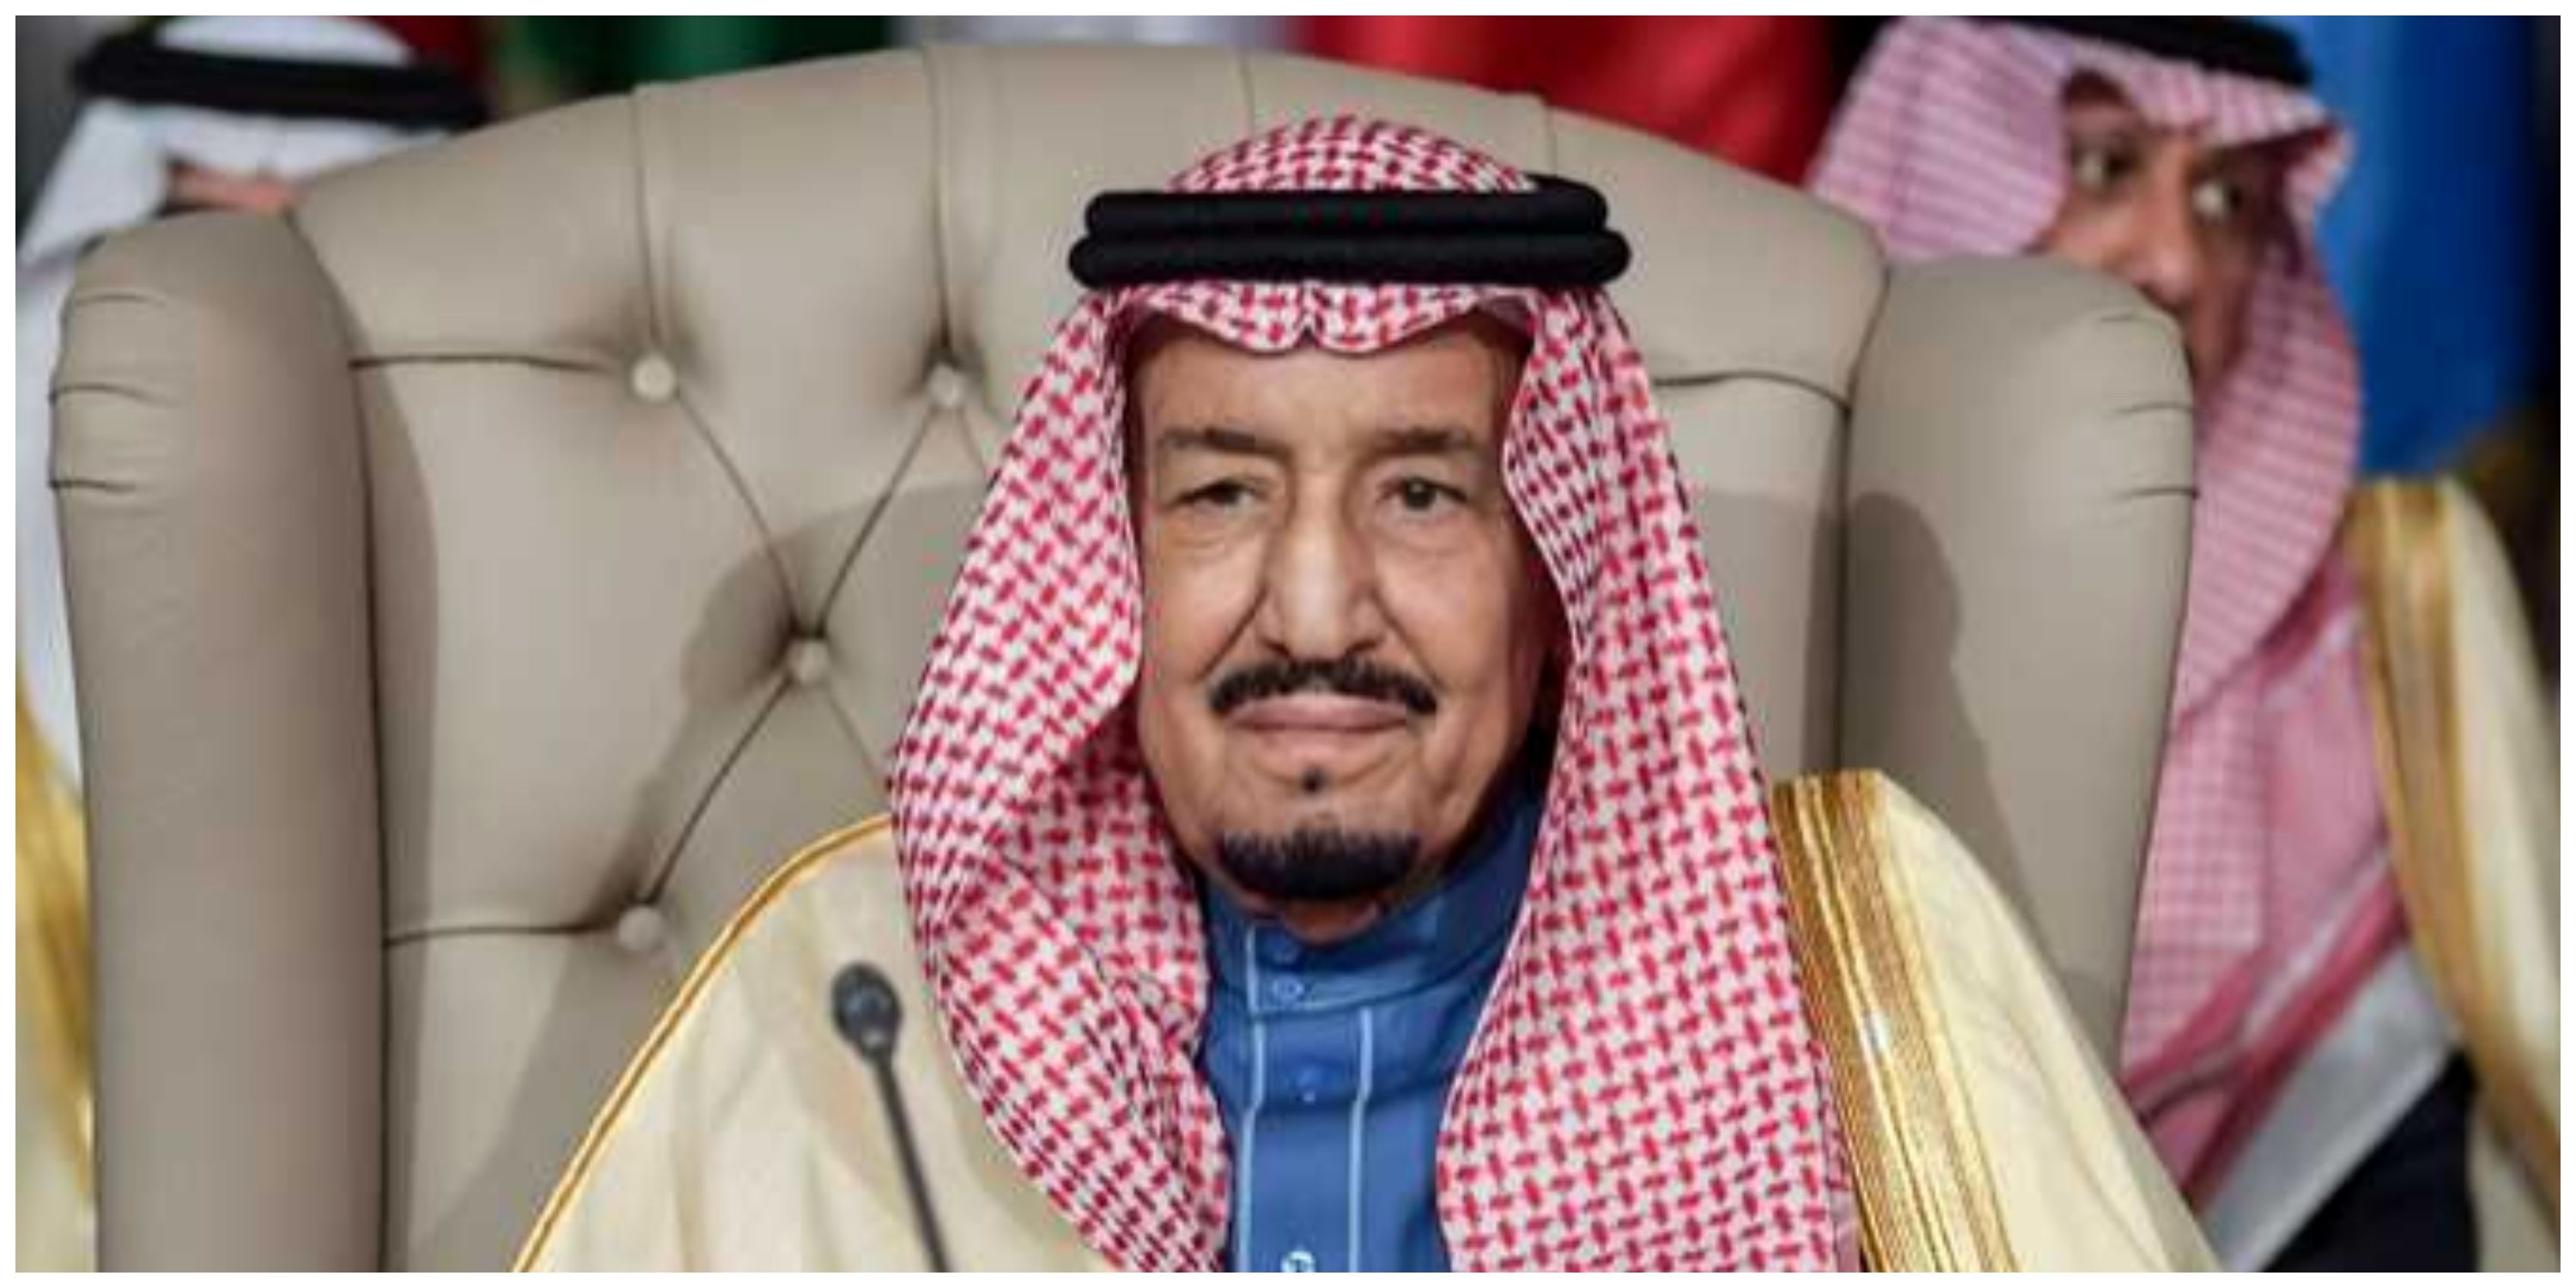  پادشاه عربستان سعودی یک فرمان صادر کرد